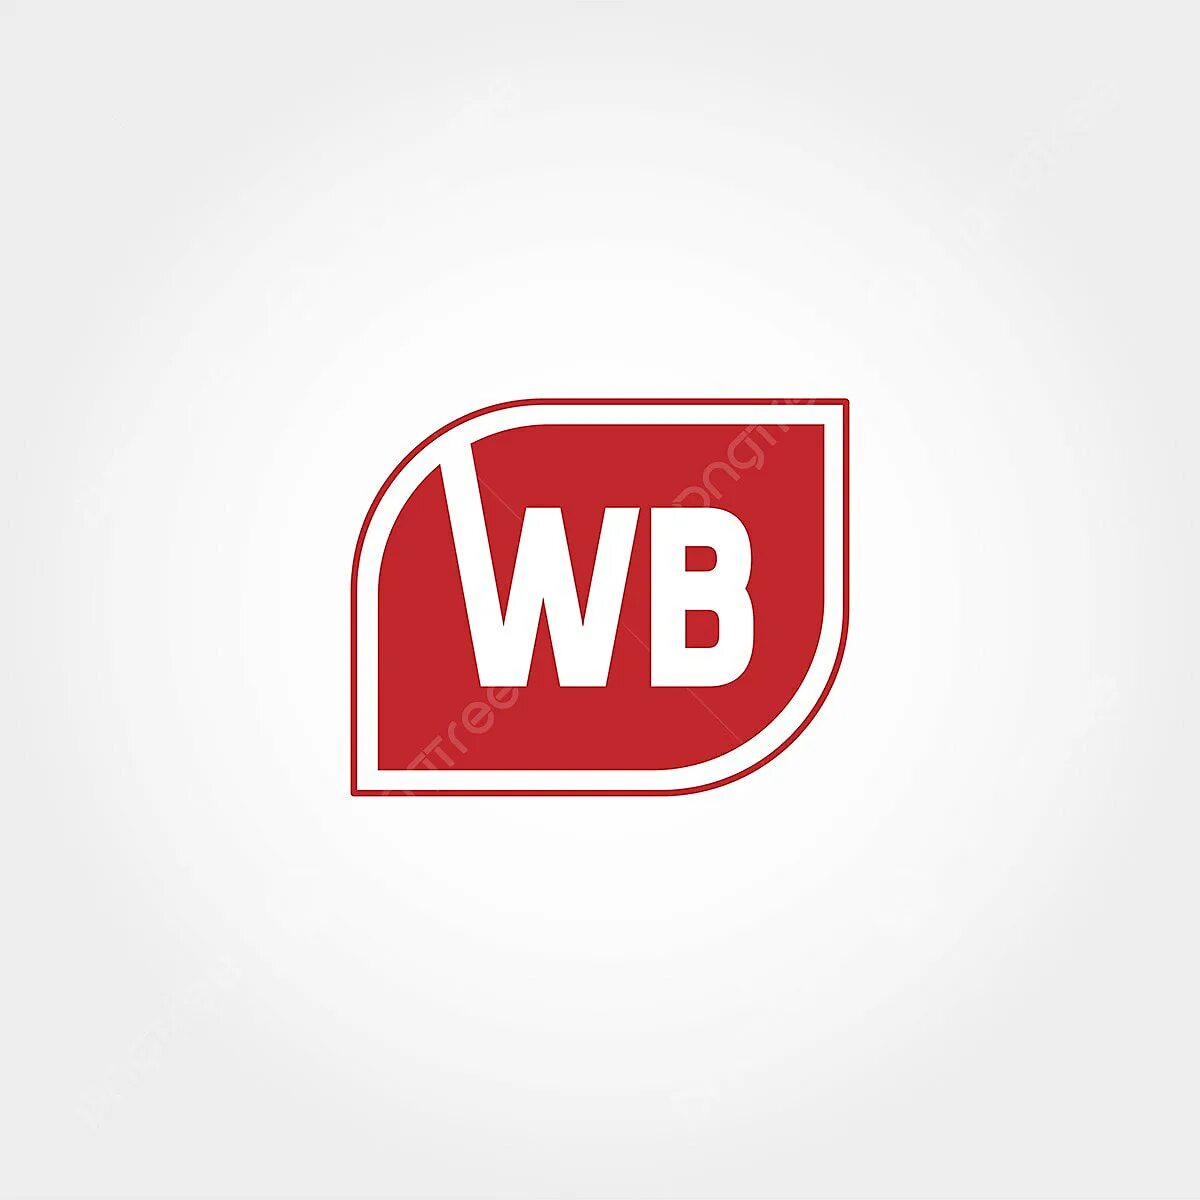 Вб пнг. Значок ВБ. Логотип WB В векторе. Картинка ВБ. Шаблоны логотипа для WB.